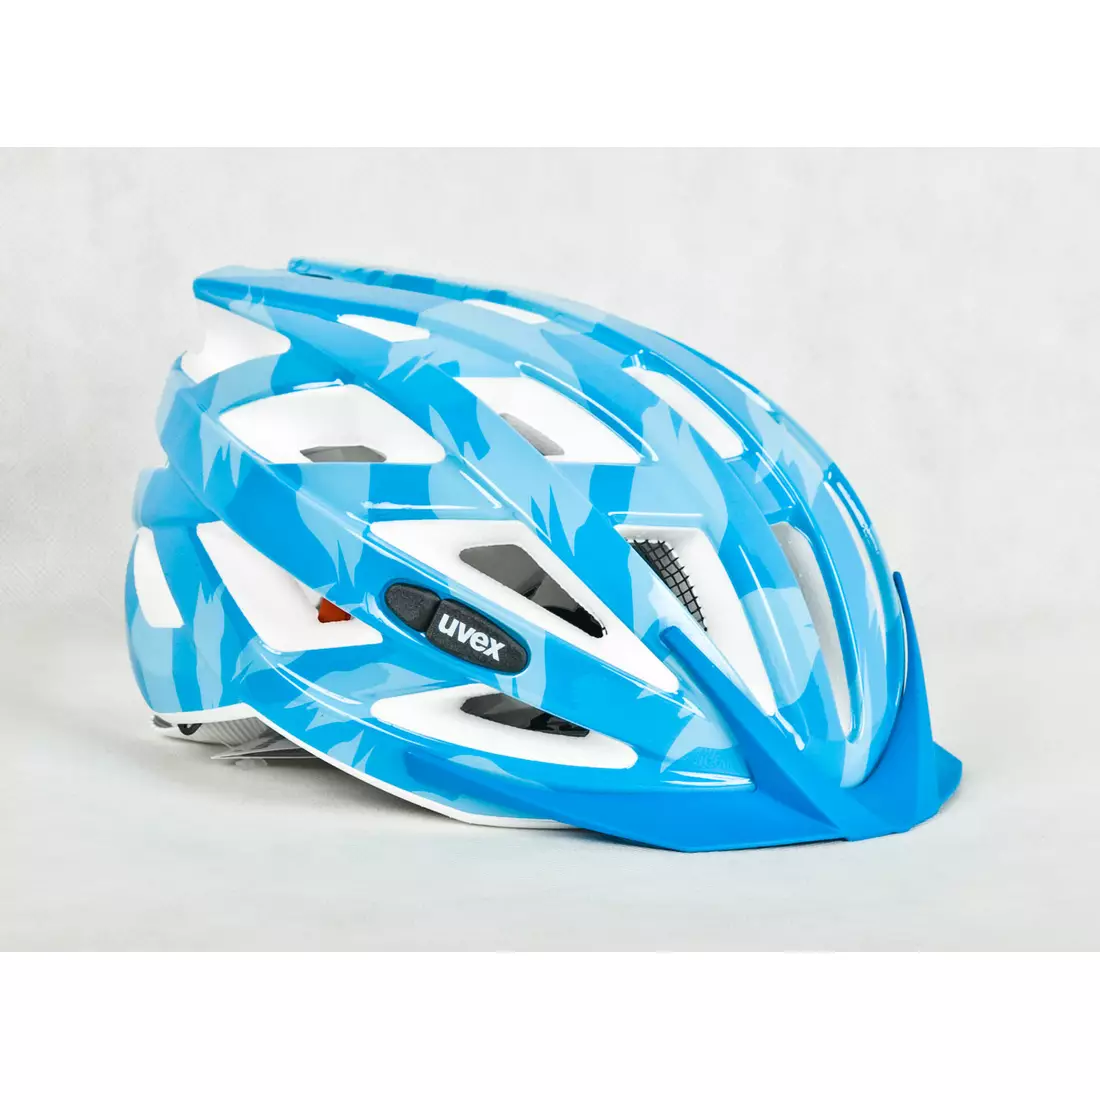 UVEX I-VO C bicycle helmet 41041720 light blue